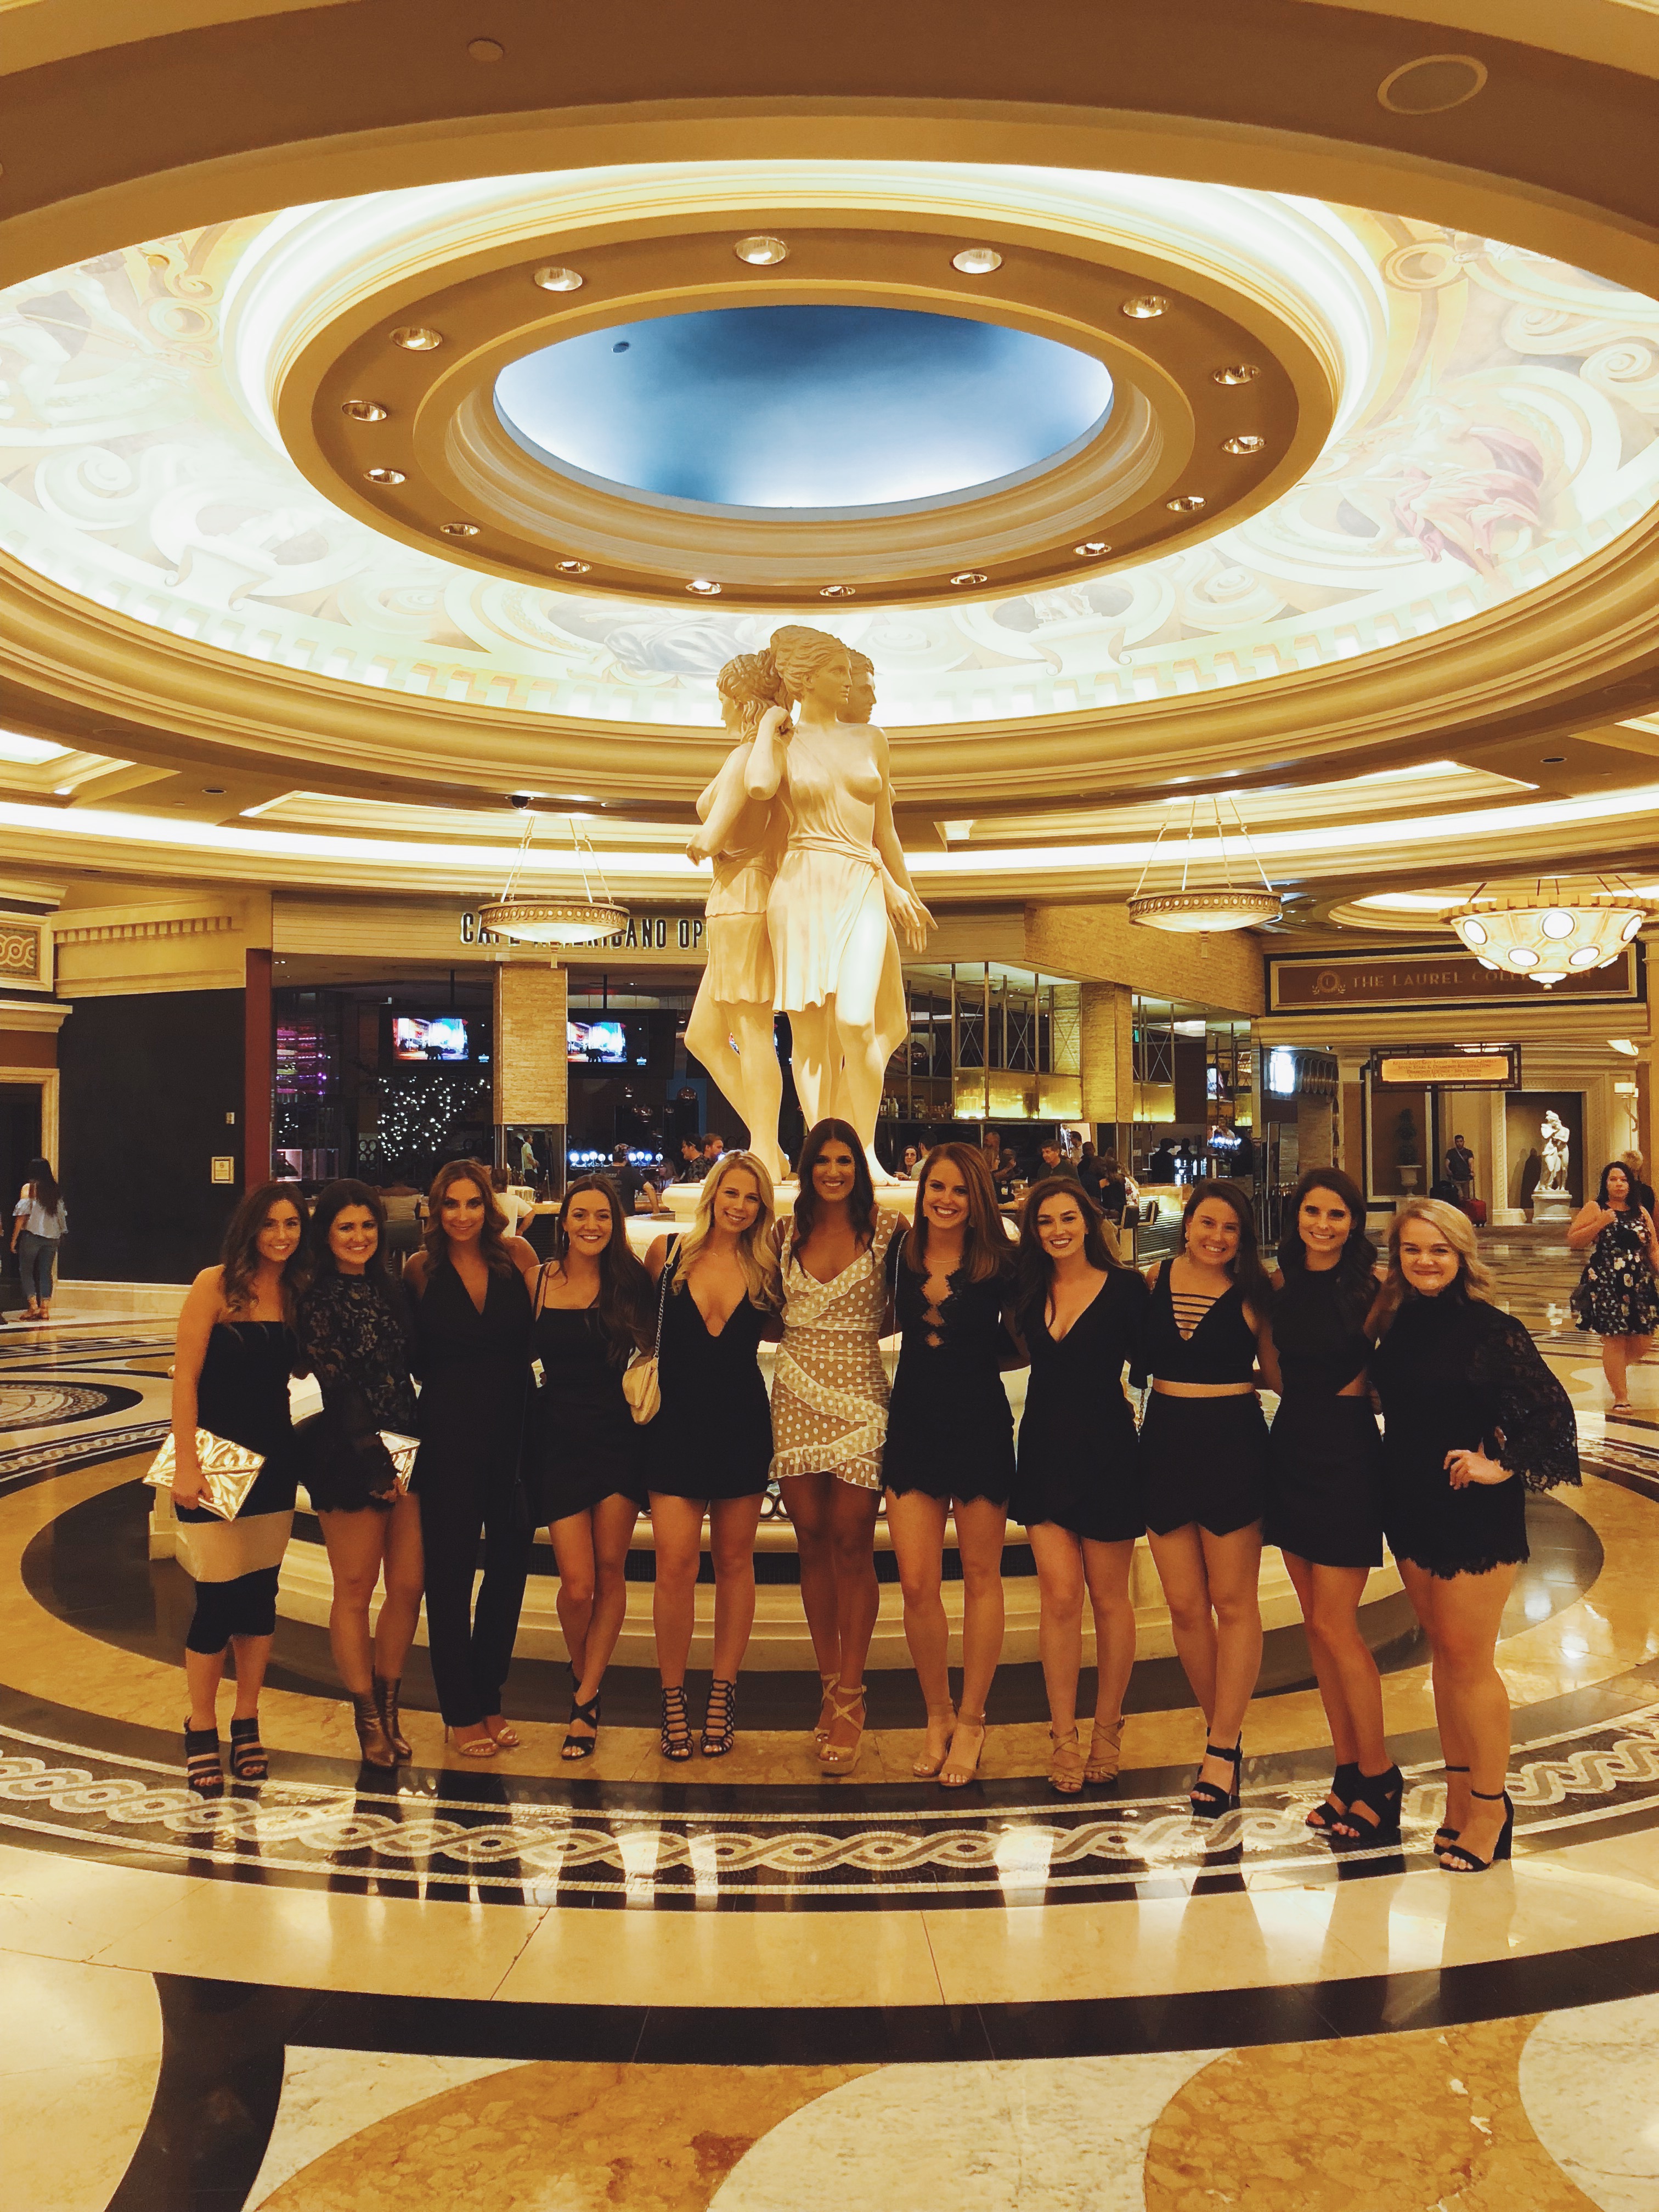 Vegas Girls Weekend